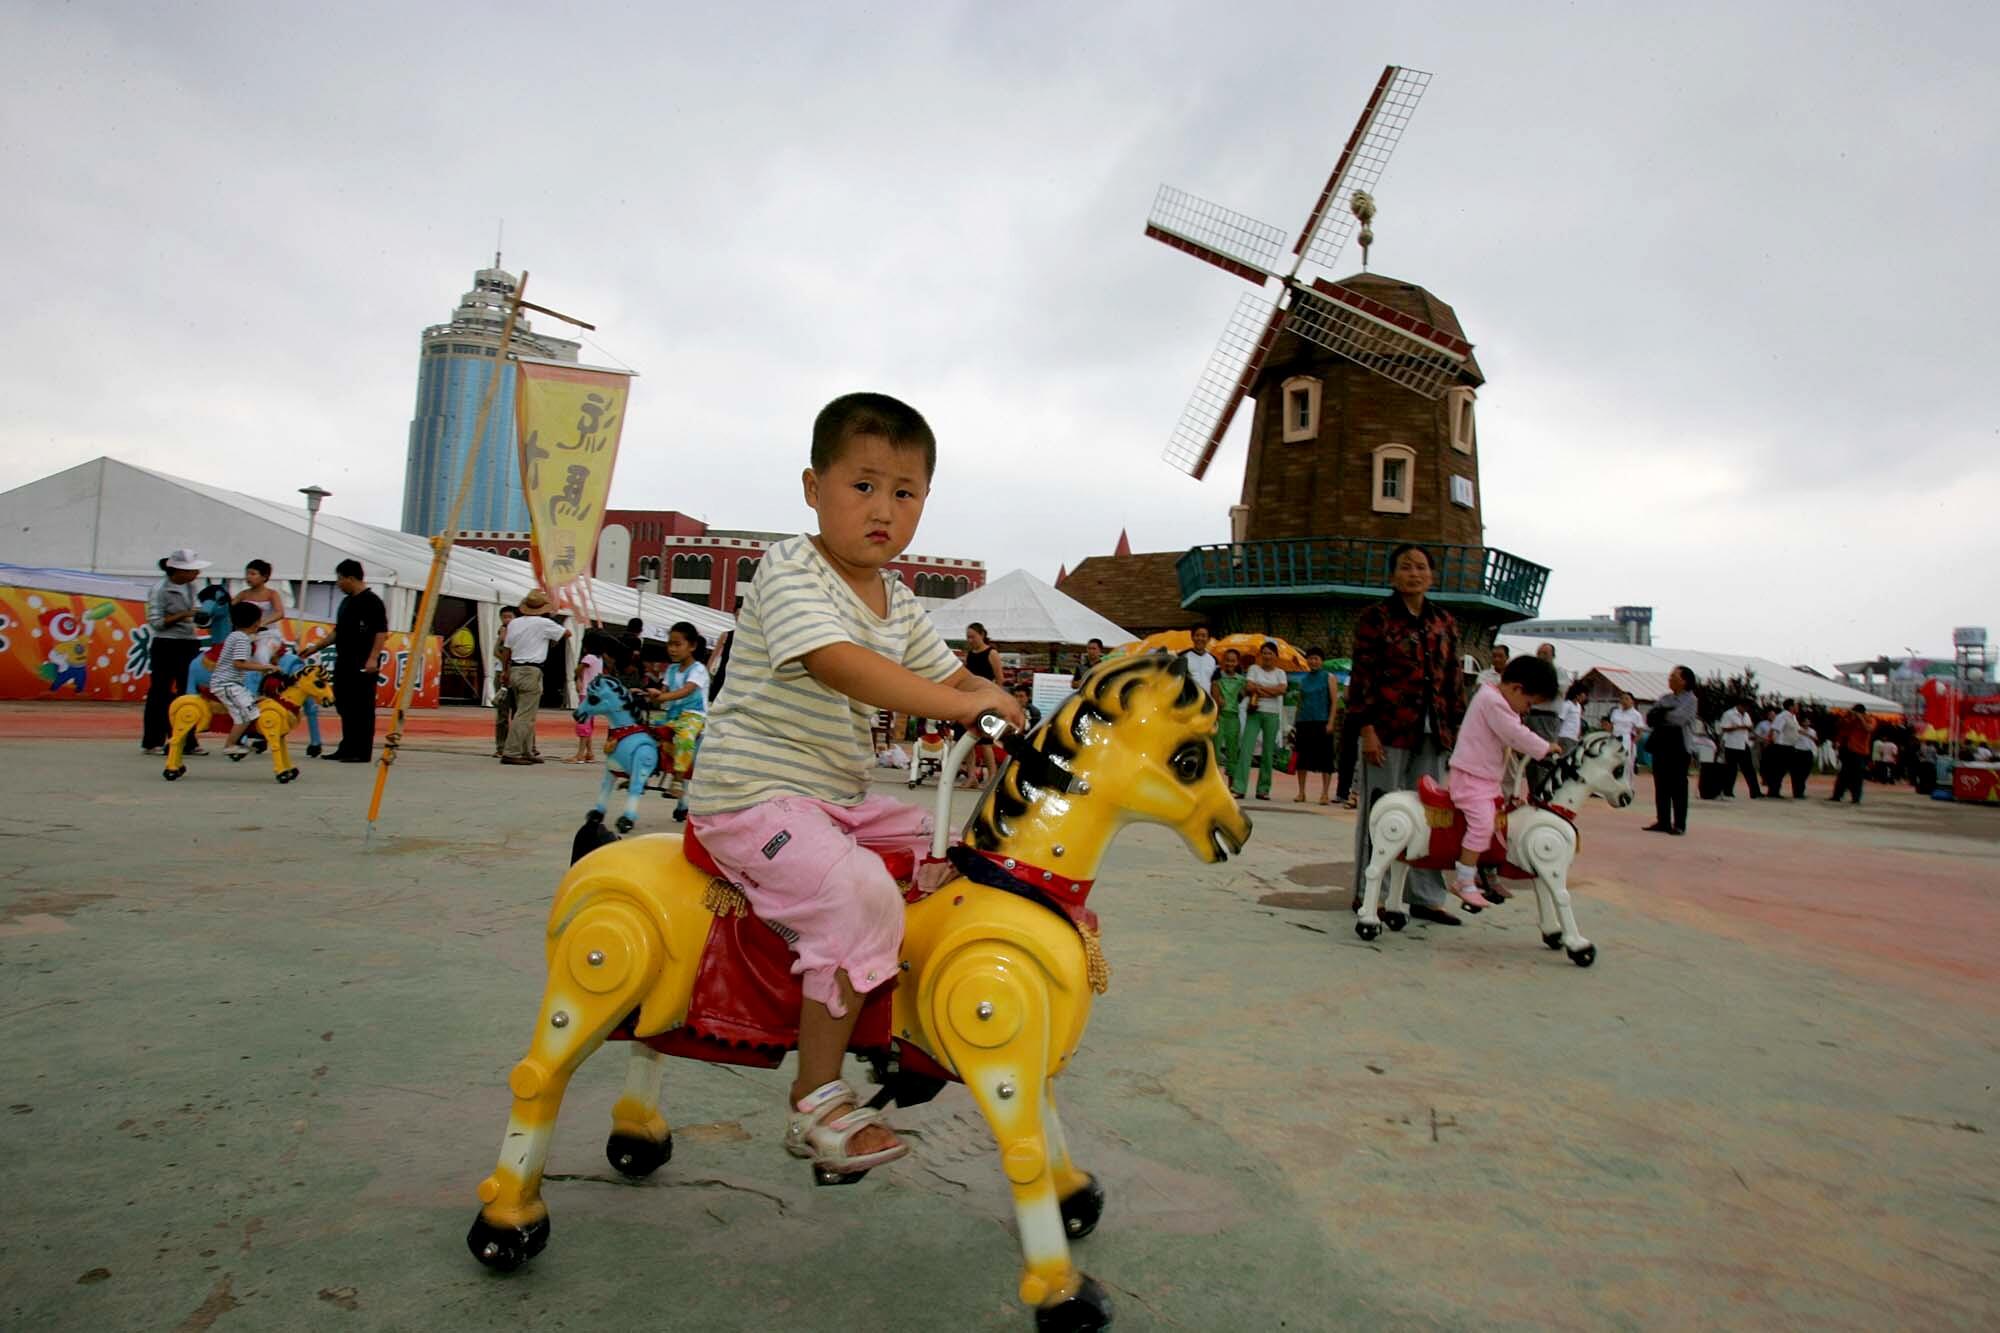 Un niño monta un pony de juguete amarillo en un parque con un molino de viento 